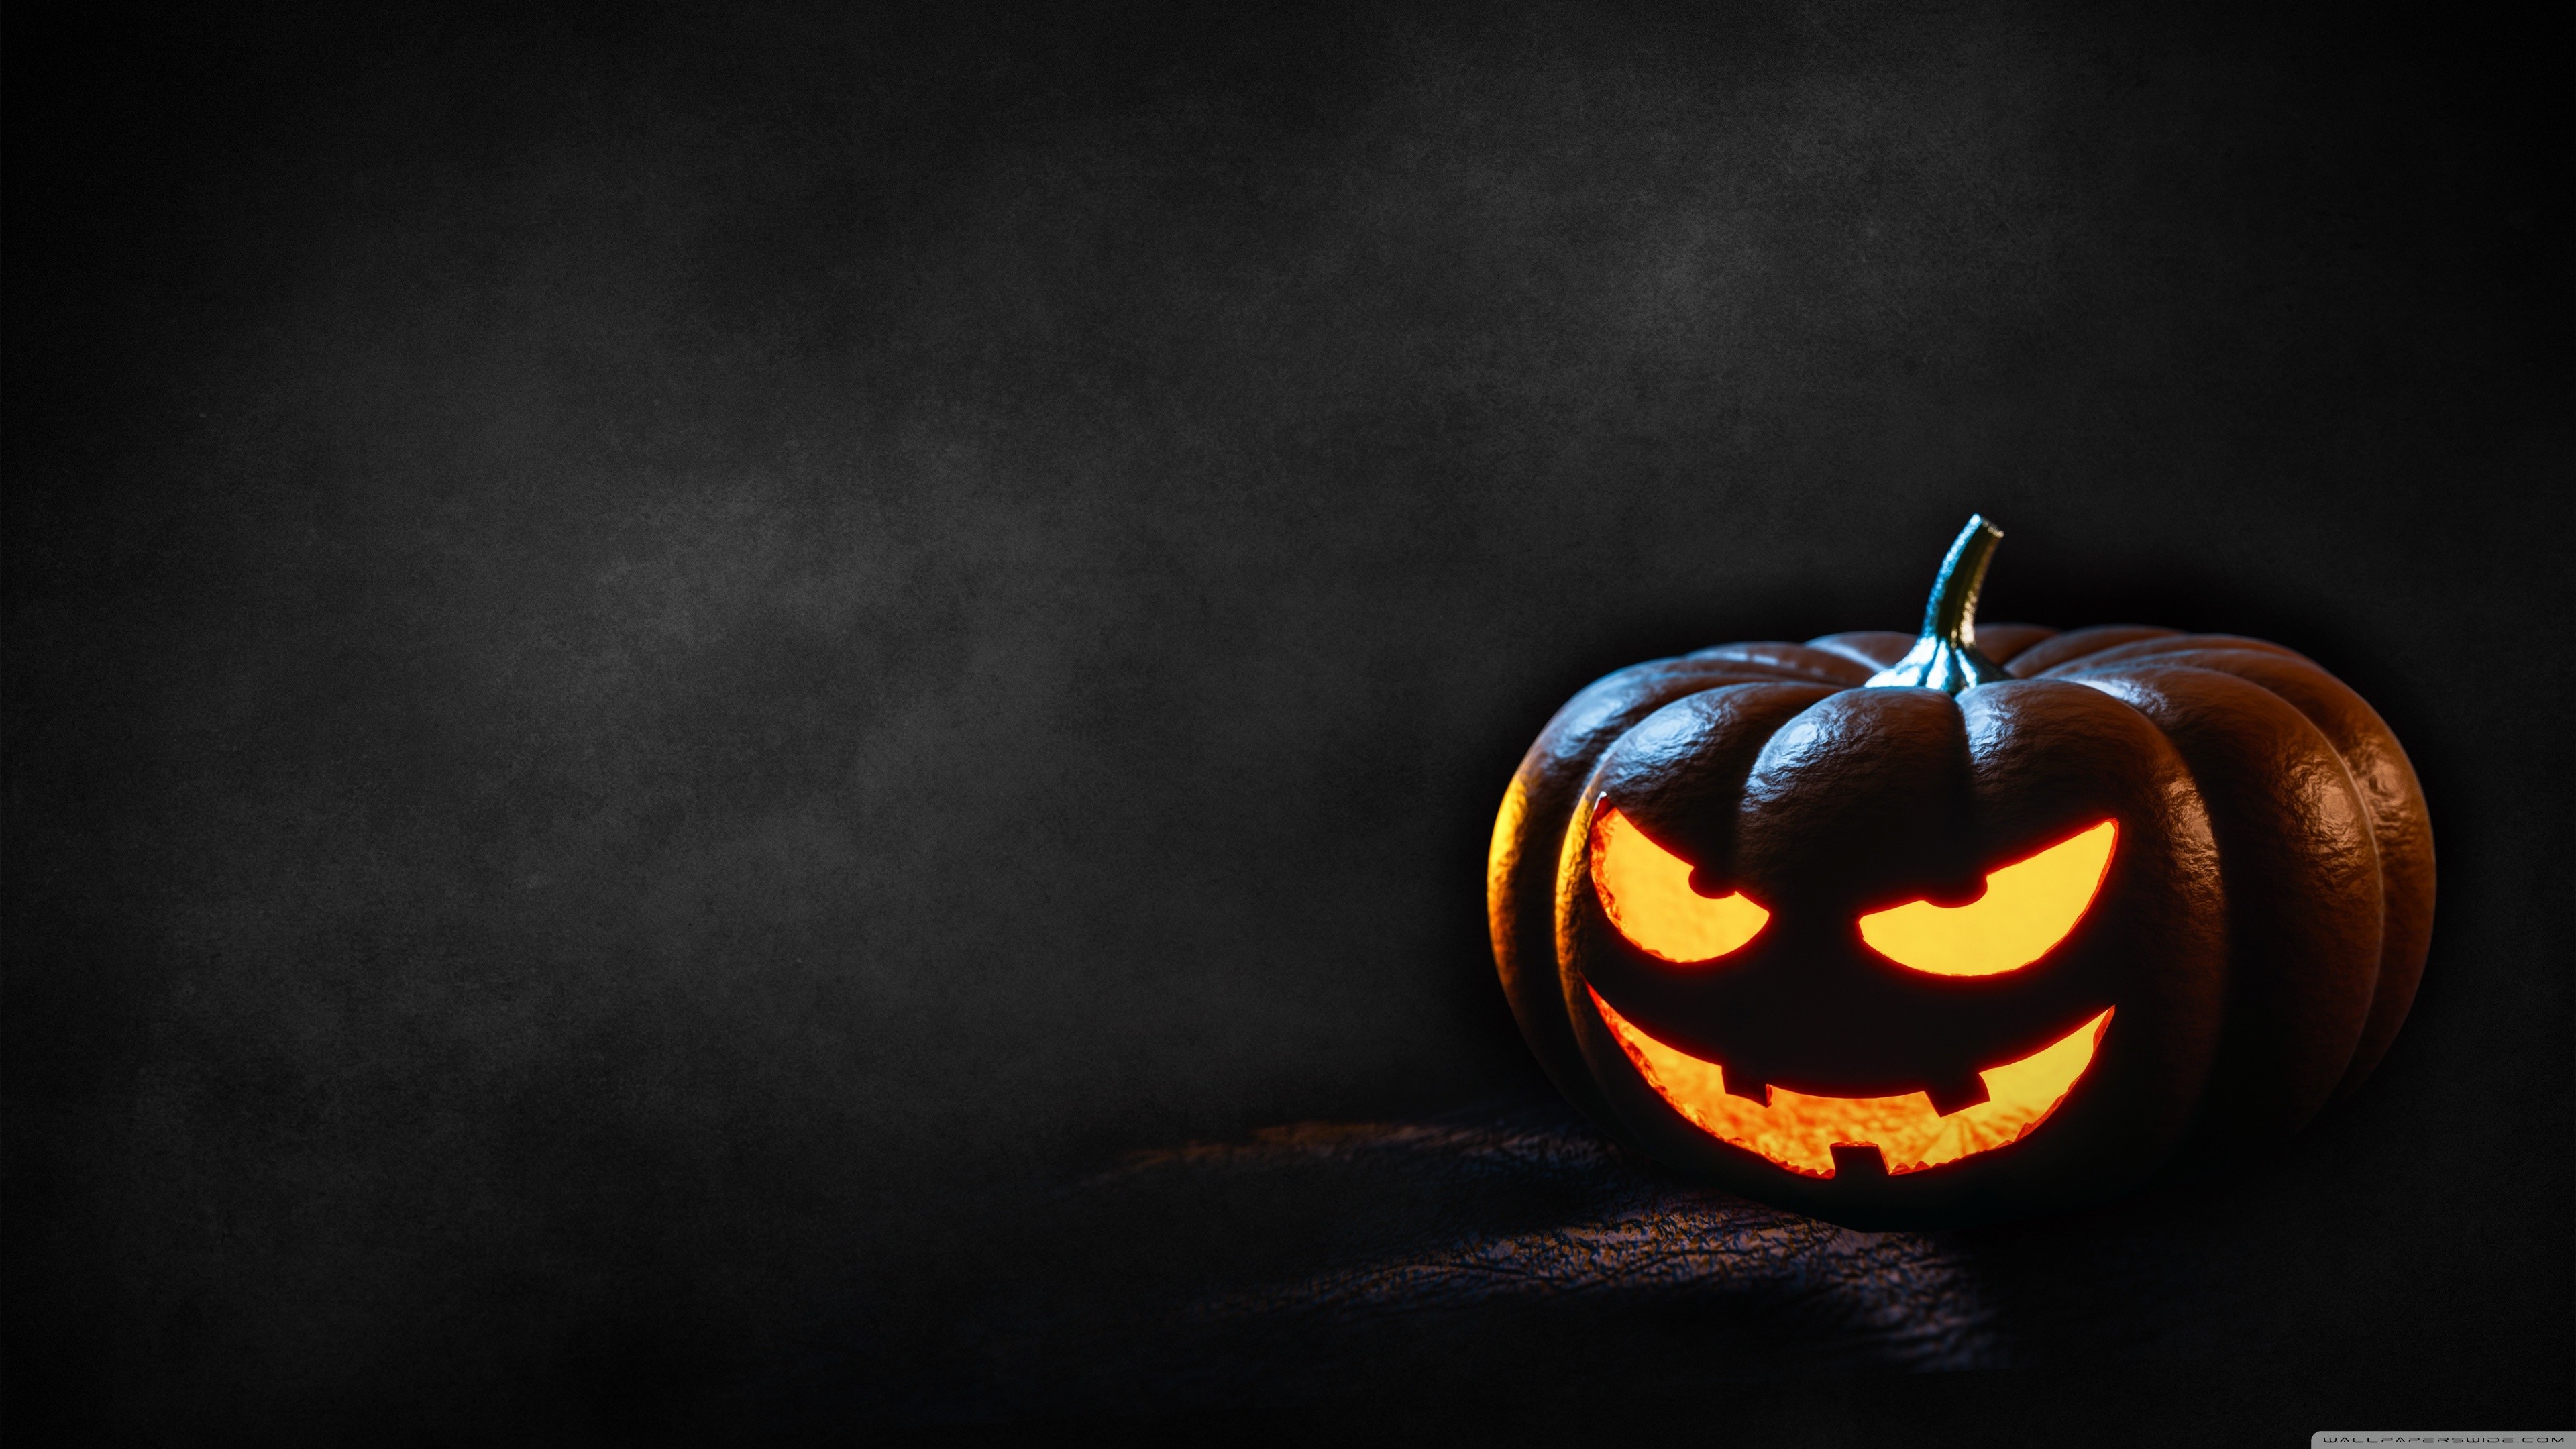 Hãy khám phá những hình ảnh ma quái, đáng sợ và hấp dẫn trong bộ sưu tập Halloween Desktop Wallpapers. Với những thiết kế độc đáo, sáng tạo bạn sẽ có được một không gian trang trí máy tính thật sự ấn tượng trong mùa Halloween.